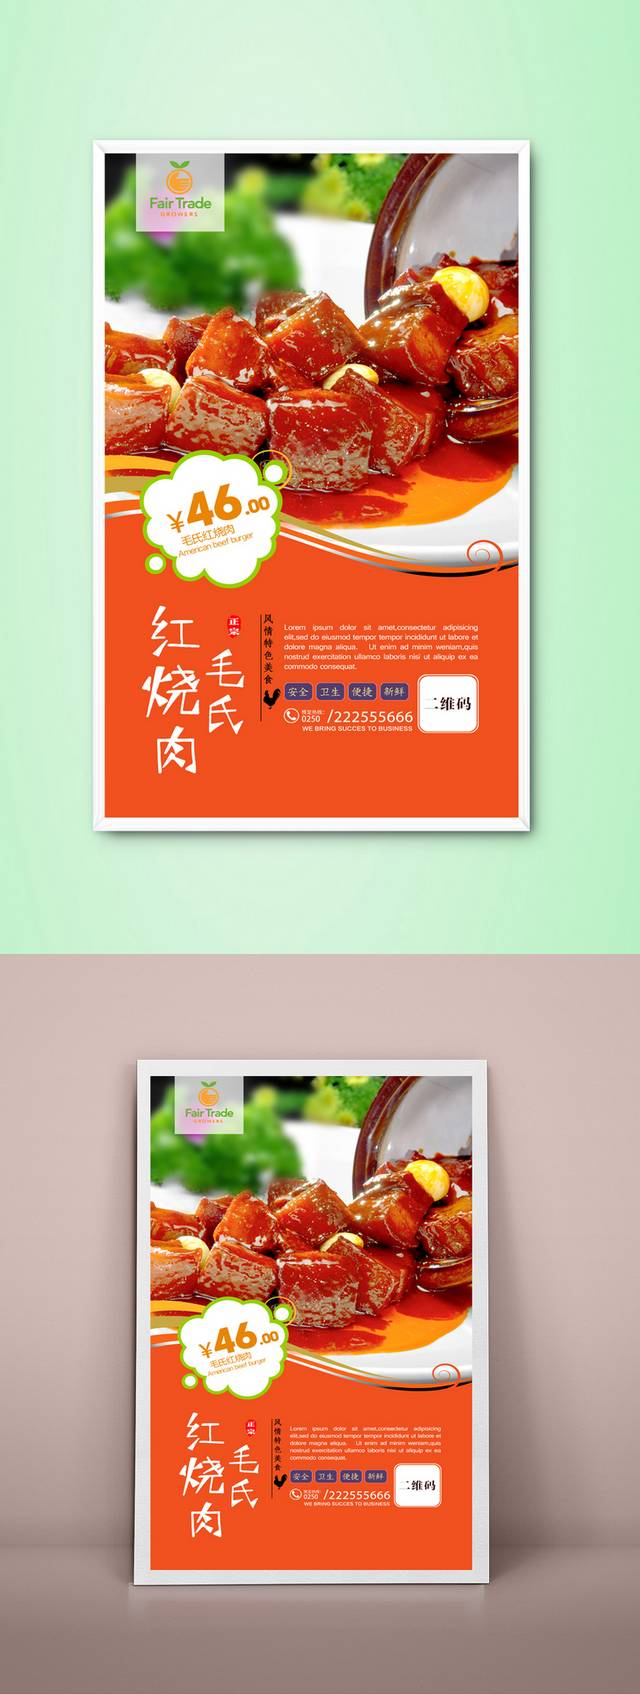 清新毛氏红烧肉宣传海报设计psd